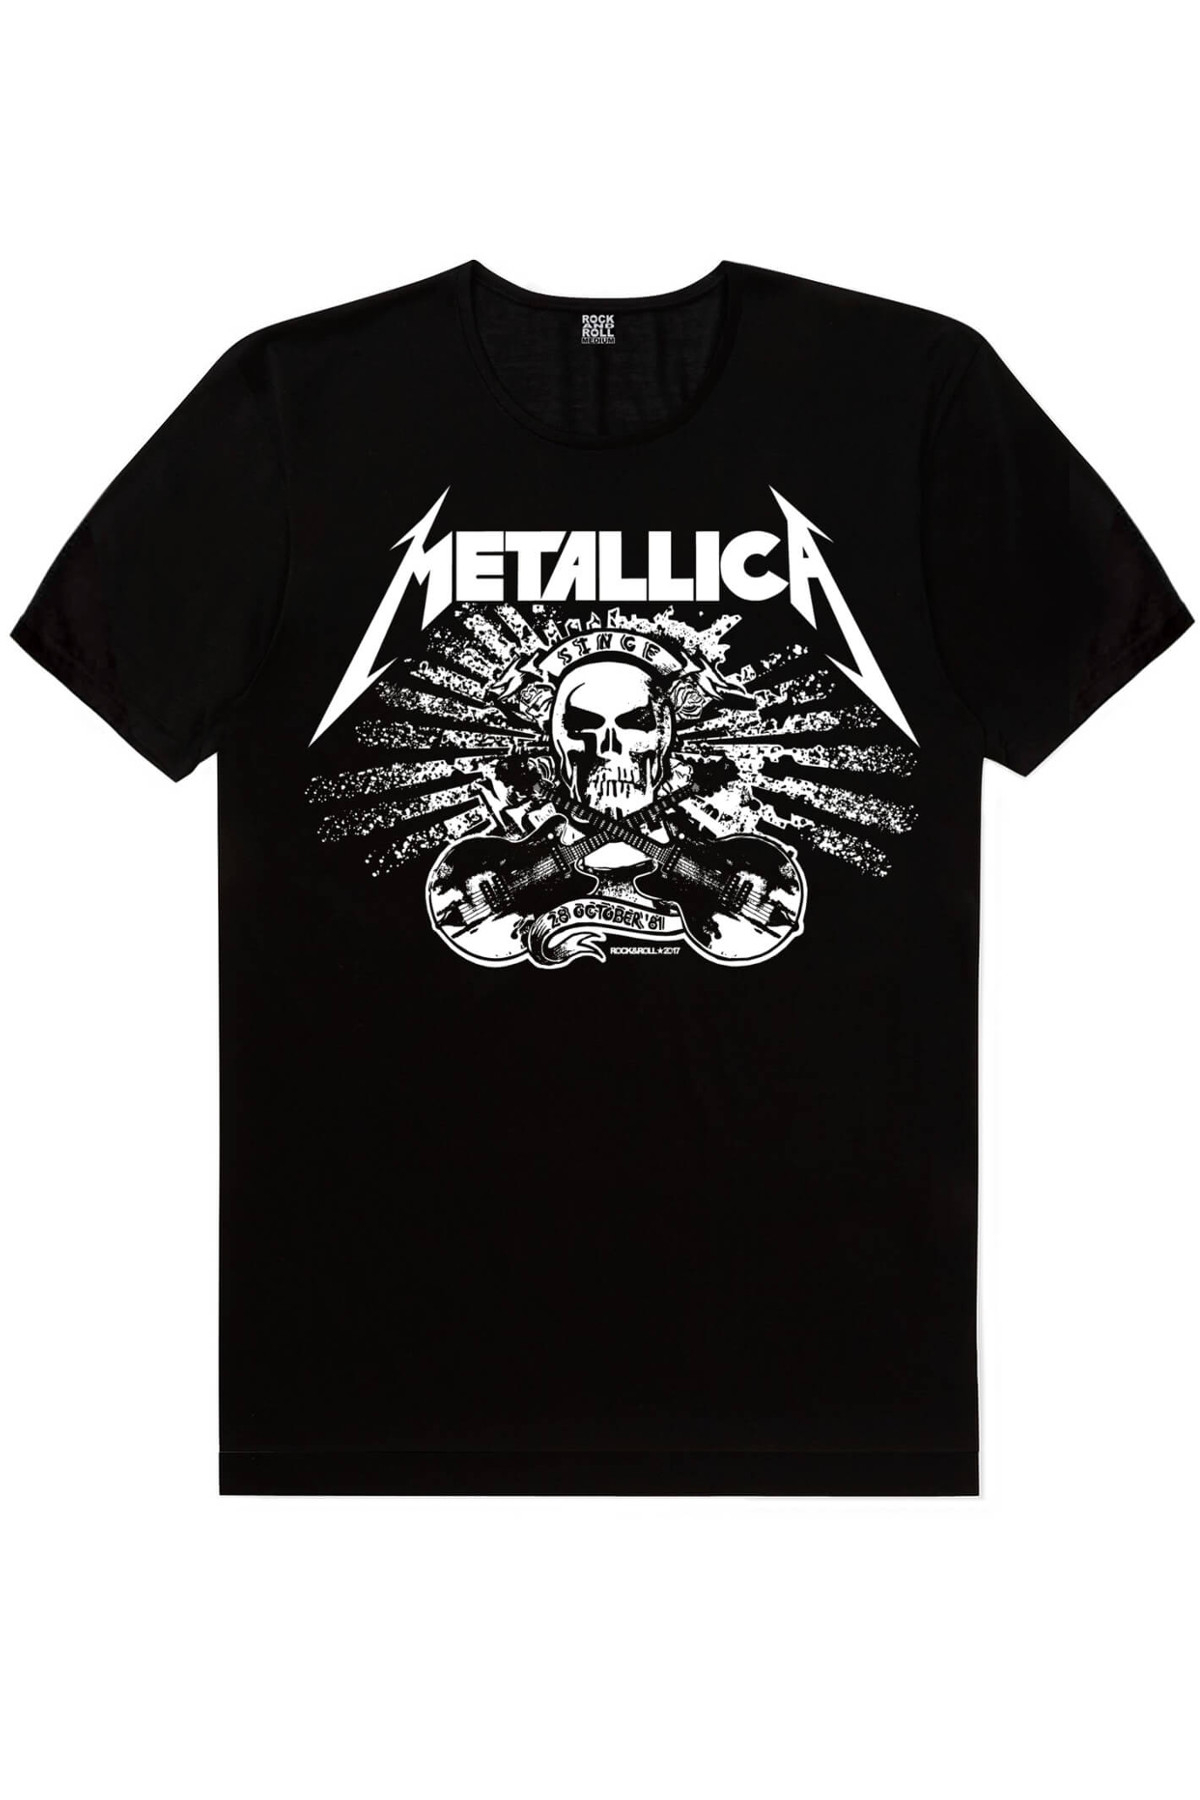 Hızlı Yaşa, Metallica Kurukafa Çocuk Tişört 2'li Eko Paket